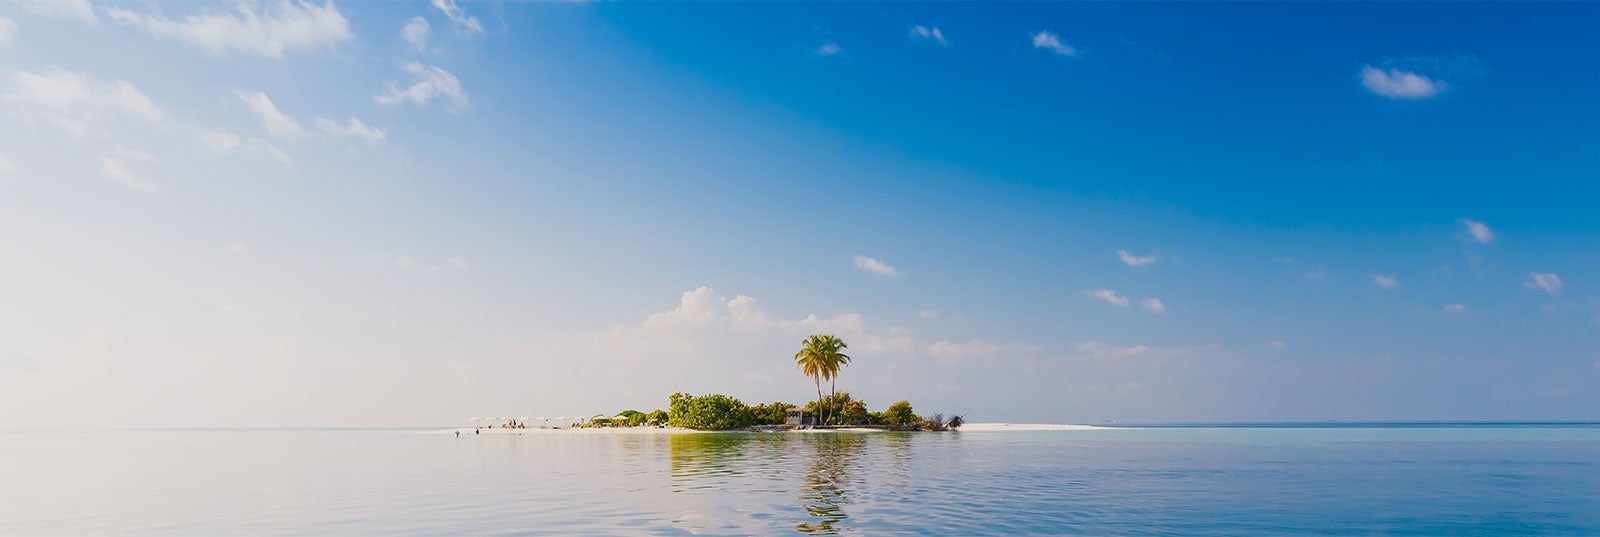 Guía turística de Maldivas